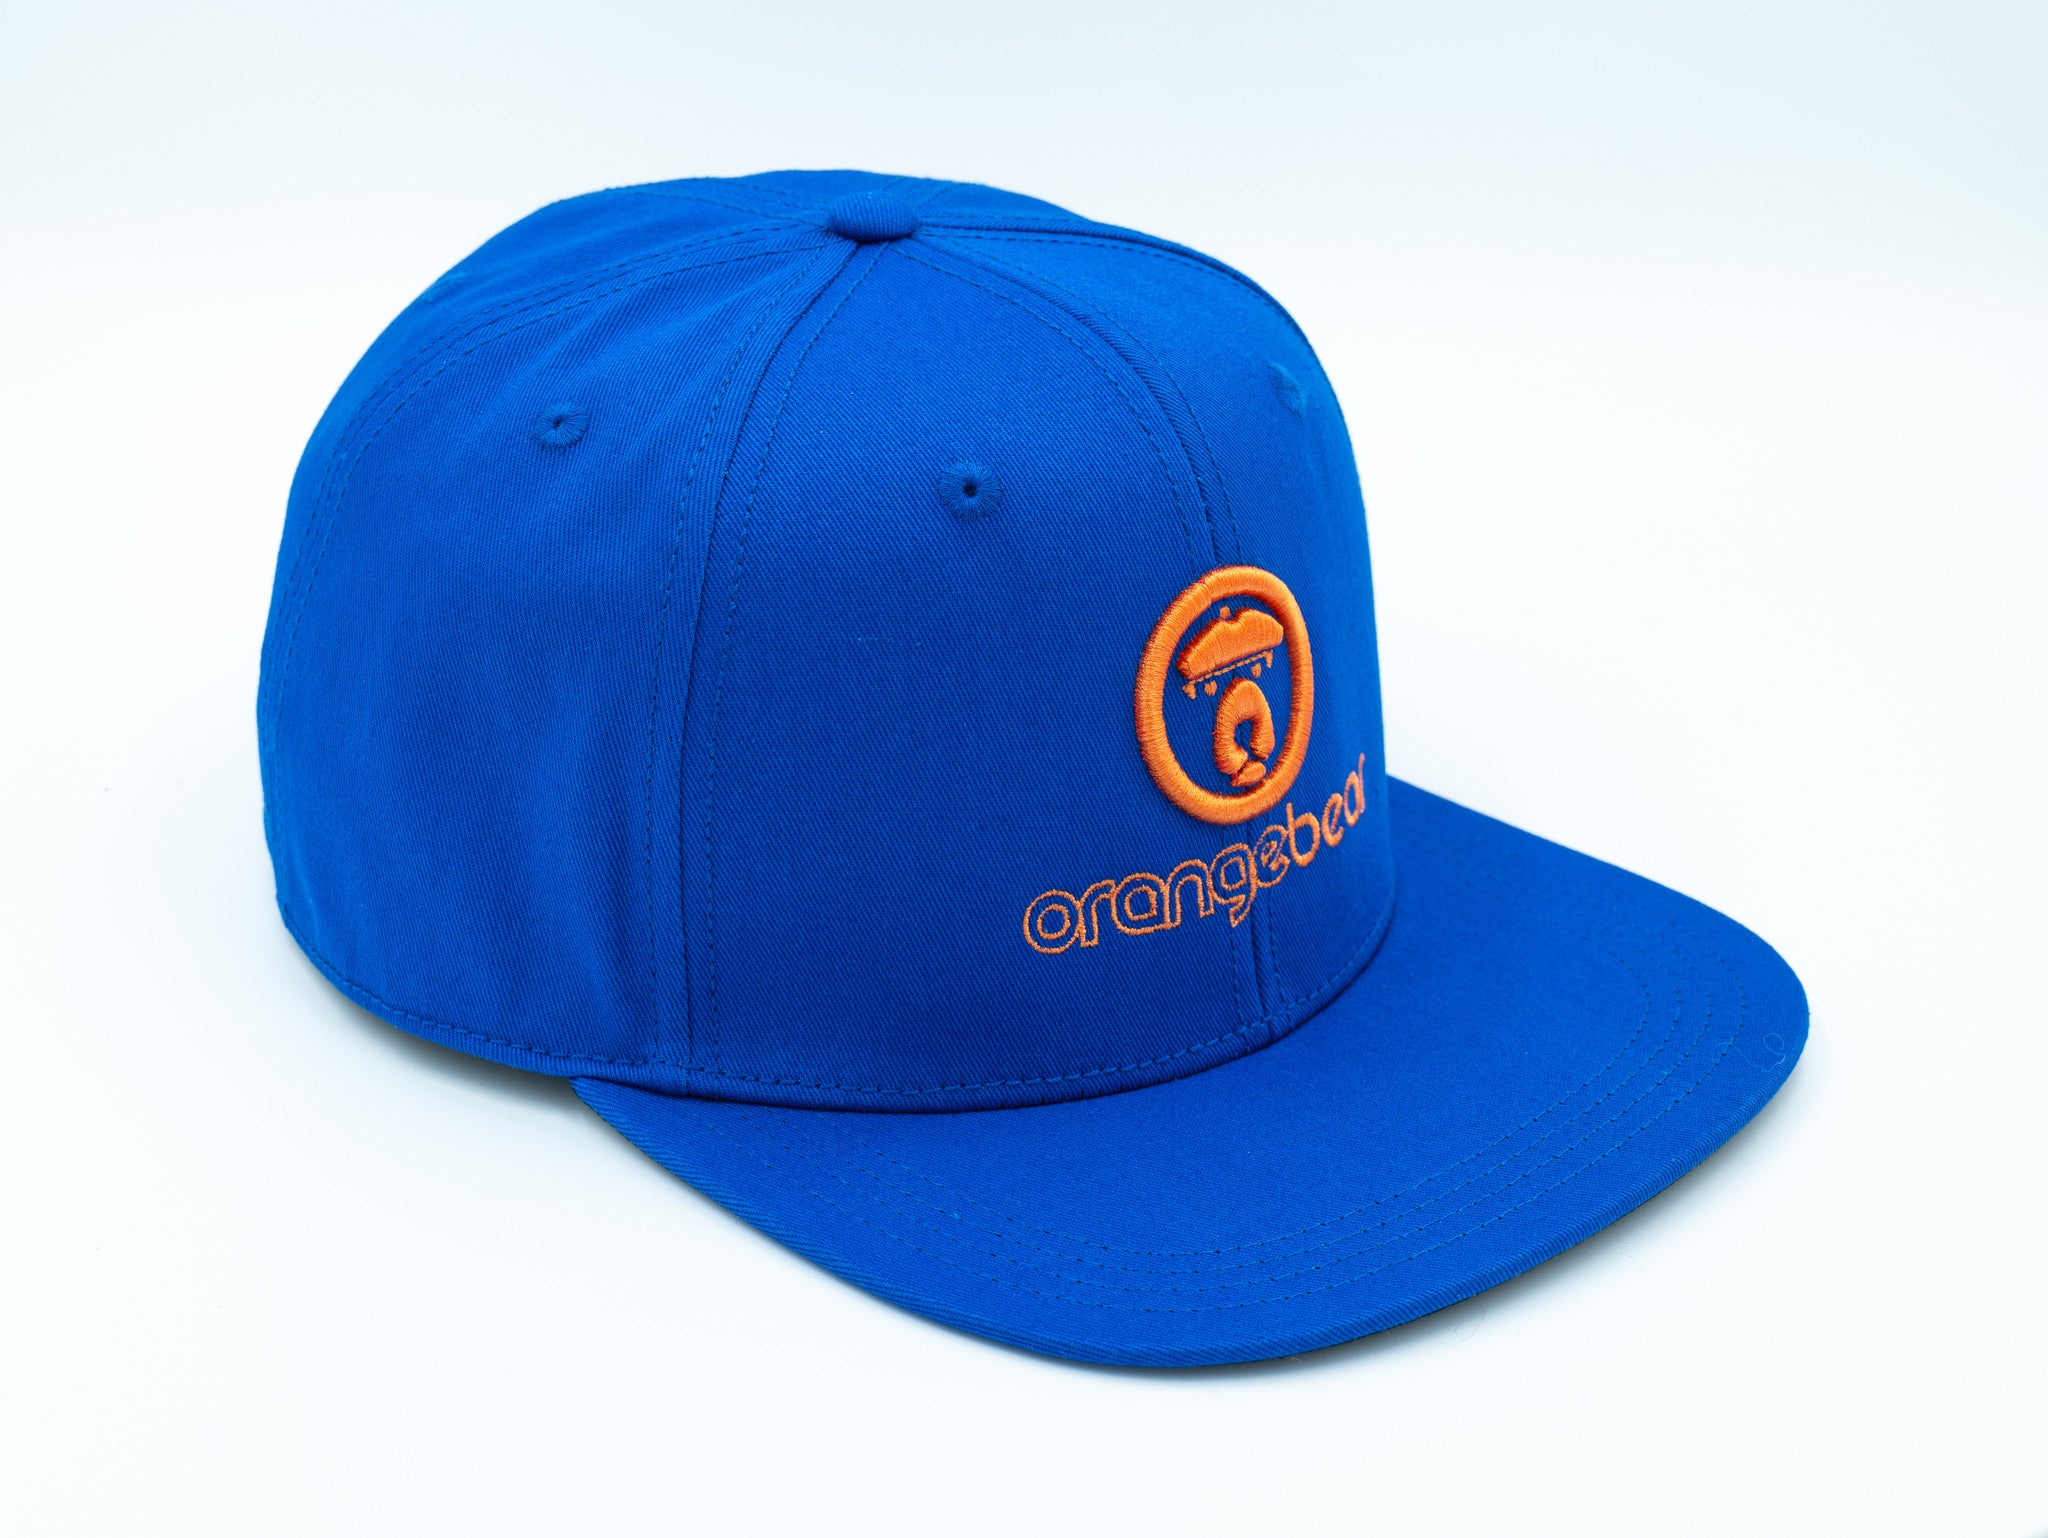 OranbearSTL Baseball Hat in blue sideway